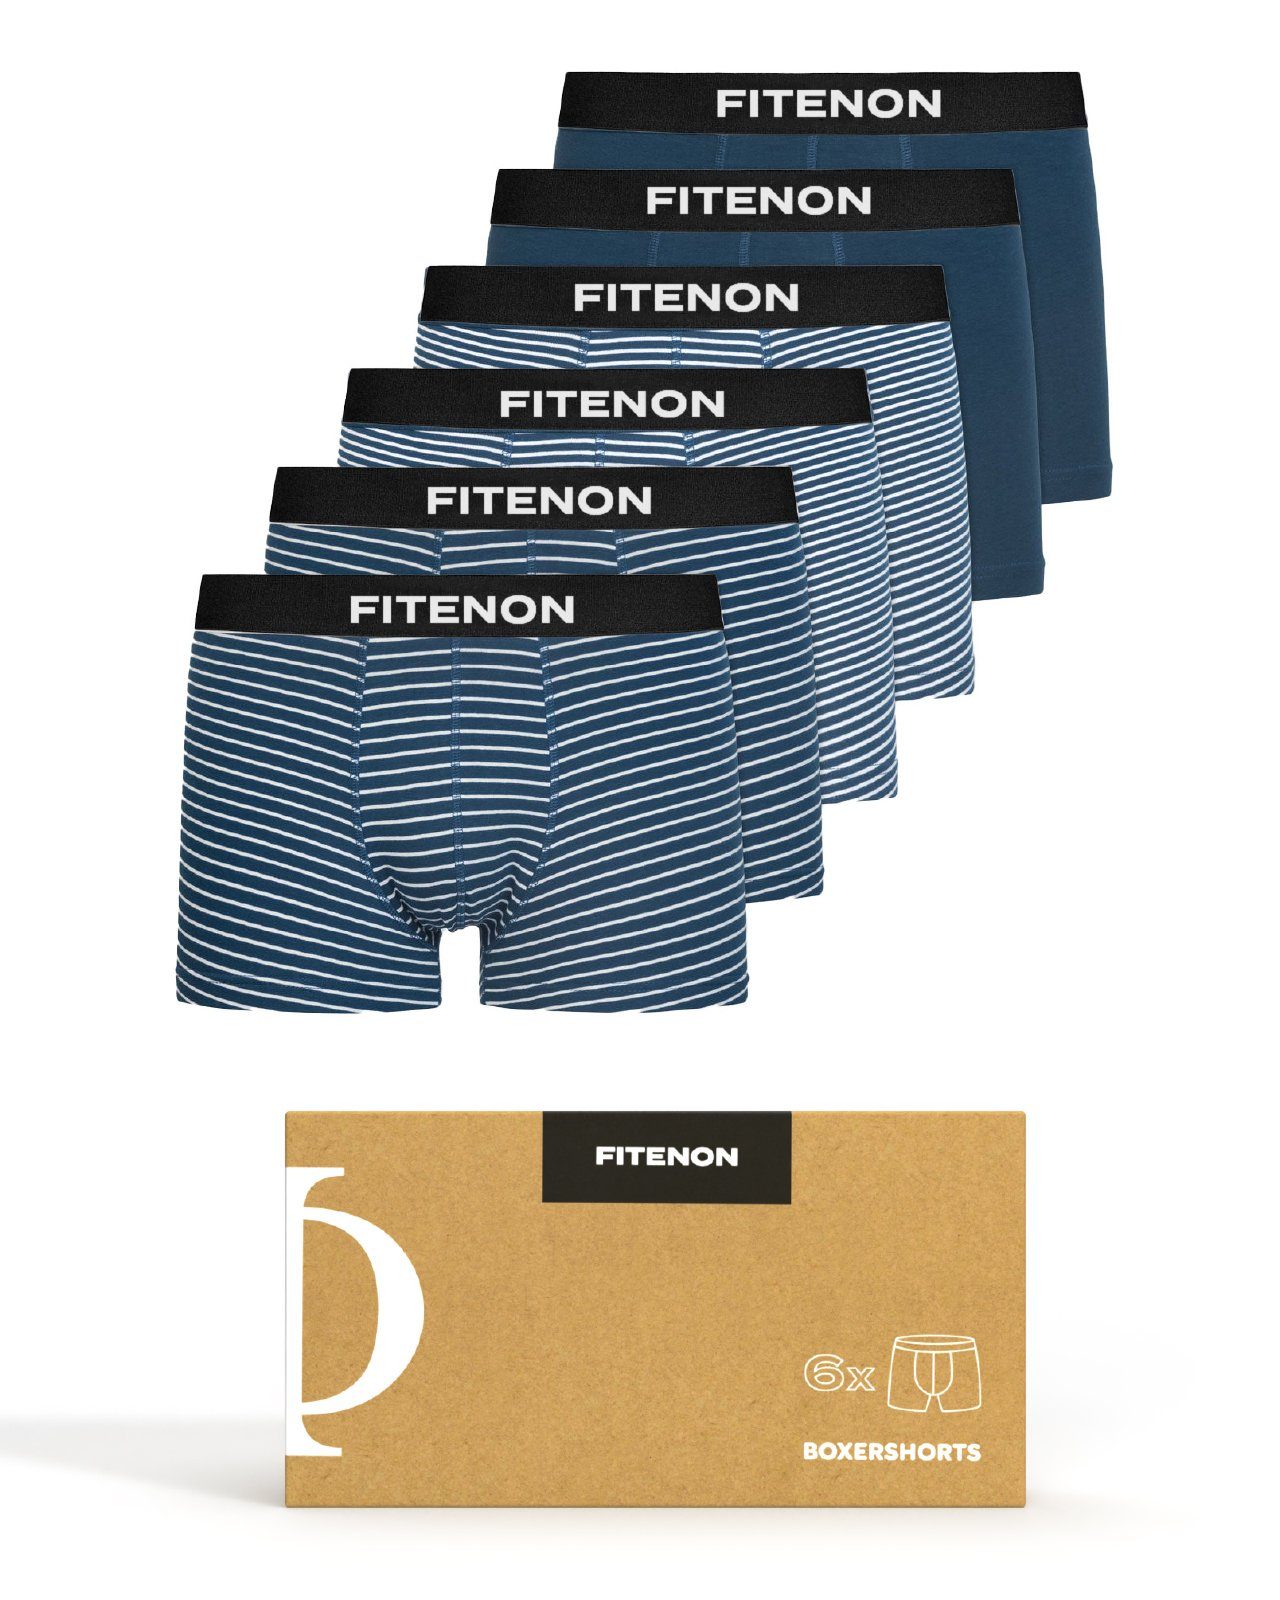 FITENON Boxershorts Herren Unterhosen, Unterwäsche, ohne kratzenden Zettel, Baumwolle (6 er Set) mit Logo-Elastikbund 4x Navy gestreift 2x Navy